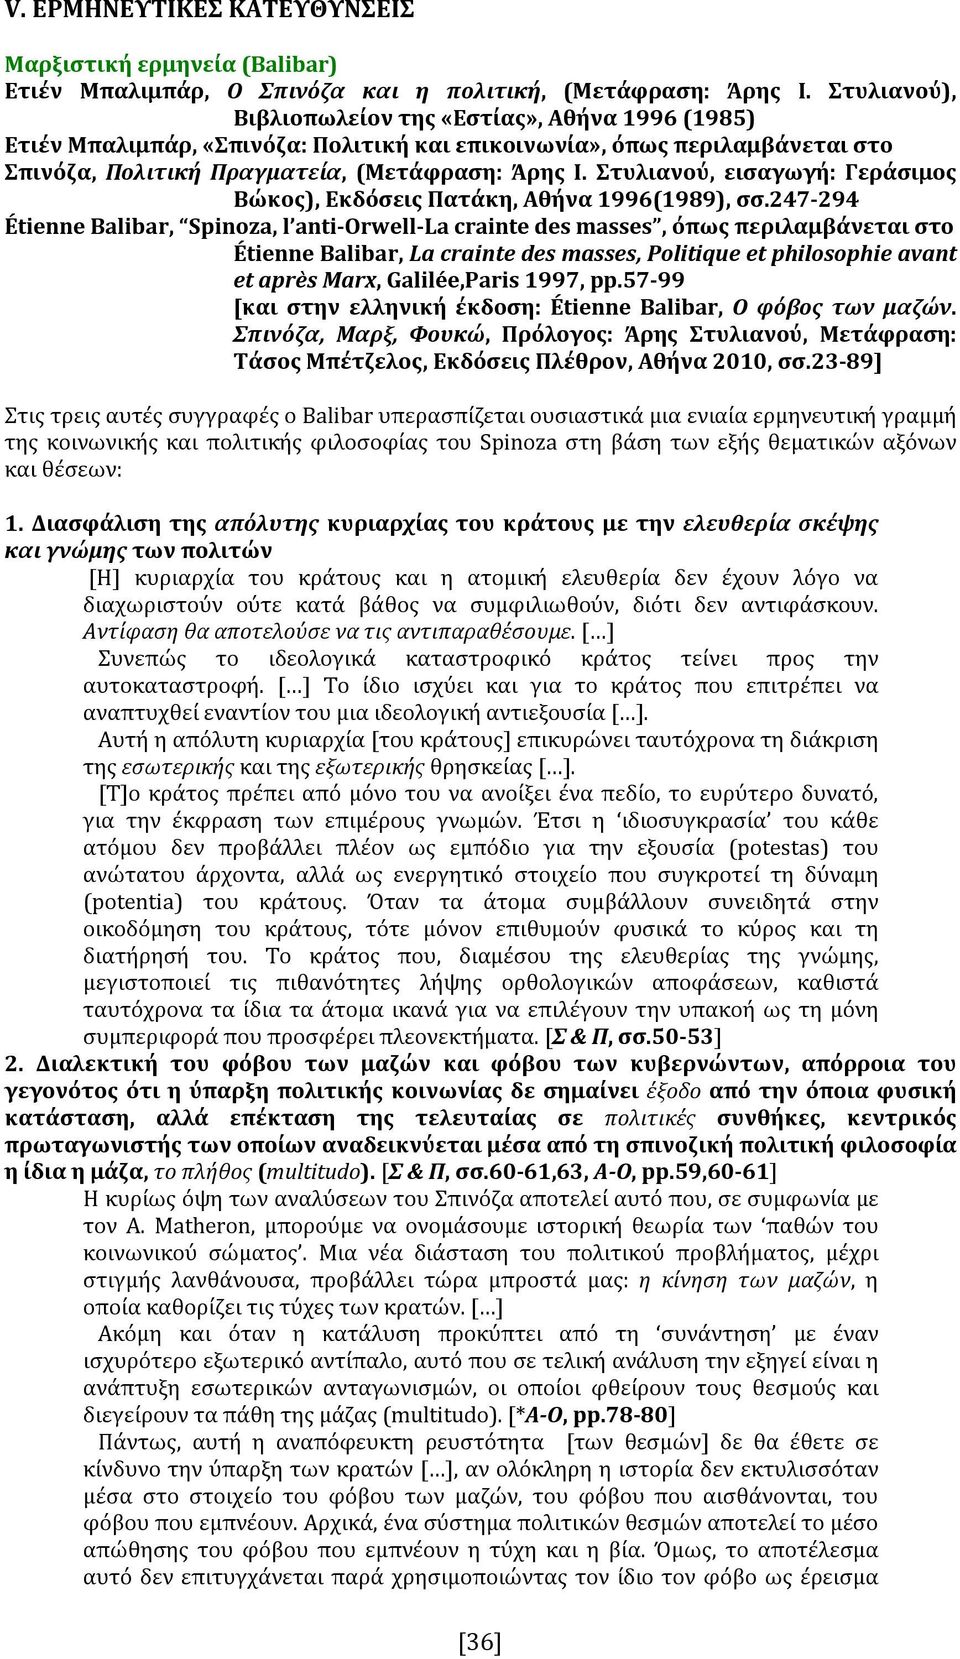 Στυλιανού, εισαγωγή: Γεράσιμος Βώκος), Εκδόσεις Πατάκη, Αθήνα 1996(1989), σσ.